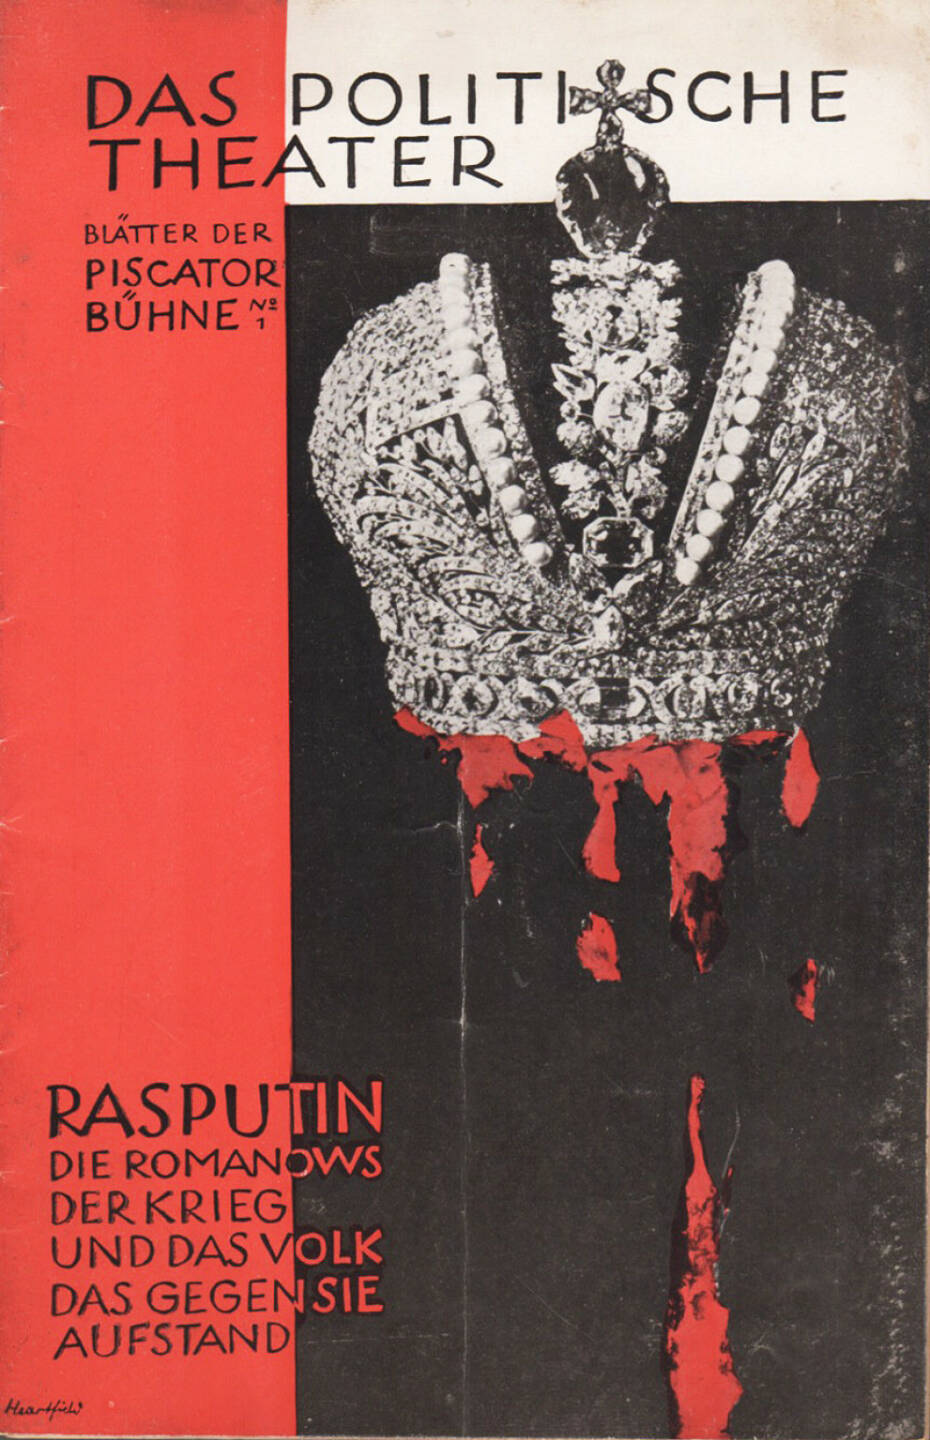 Blätter der Piscatorbühne - Das politische Theater - Rasputin, die Romanows..., Bepa-Verlag 1927, Cover -  http://josefchladek.com/book/blatter_der_piscatorbuhne_-_das_politische_theater_-_rasputin_die_romanows_der_krieg_und_das_volk_das_gegen_sie_aufstand_november_1927